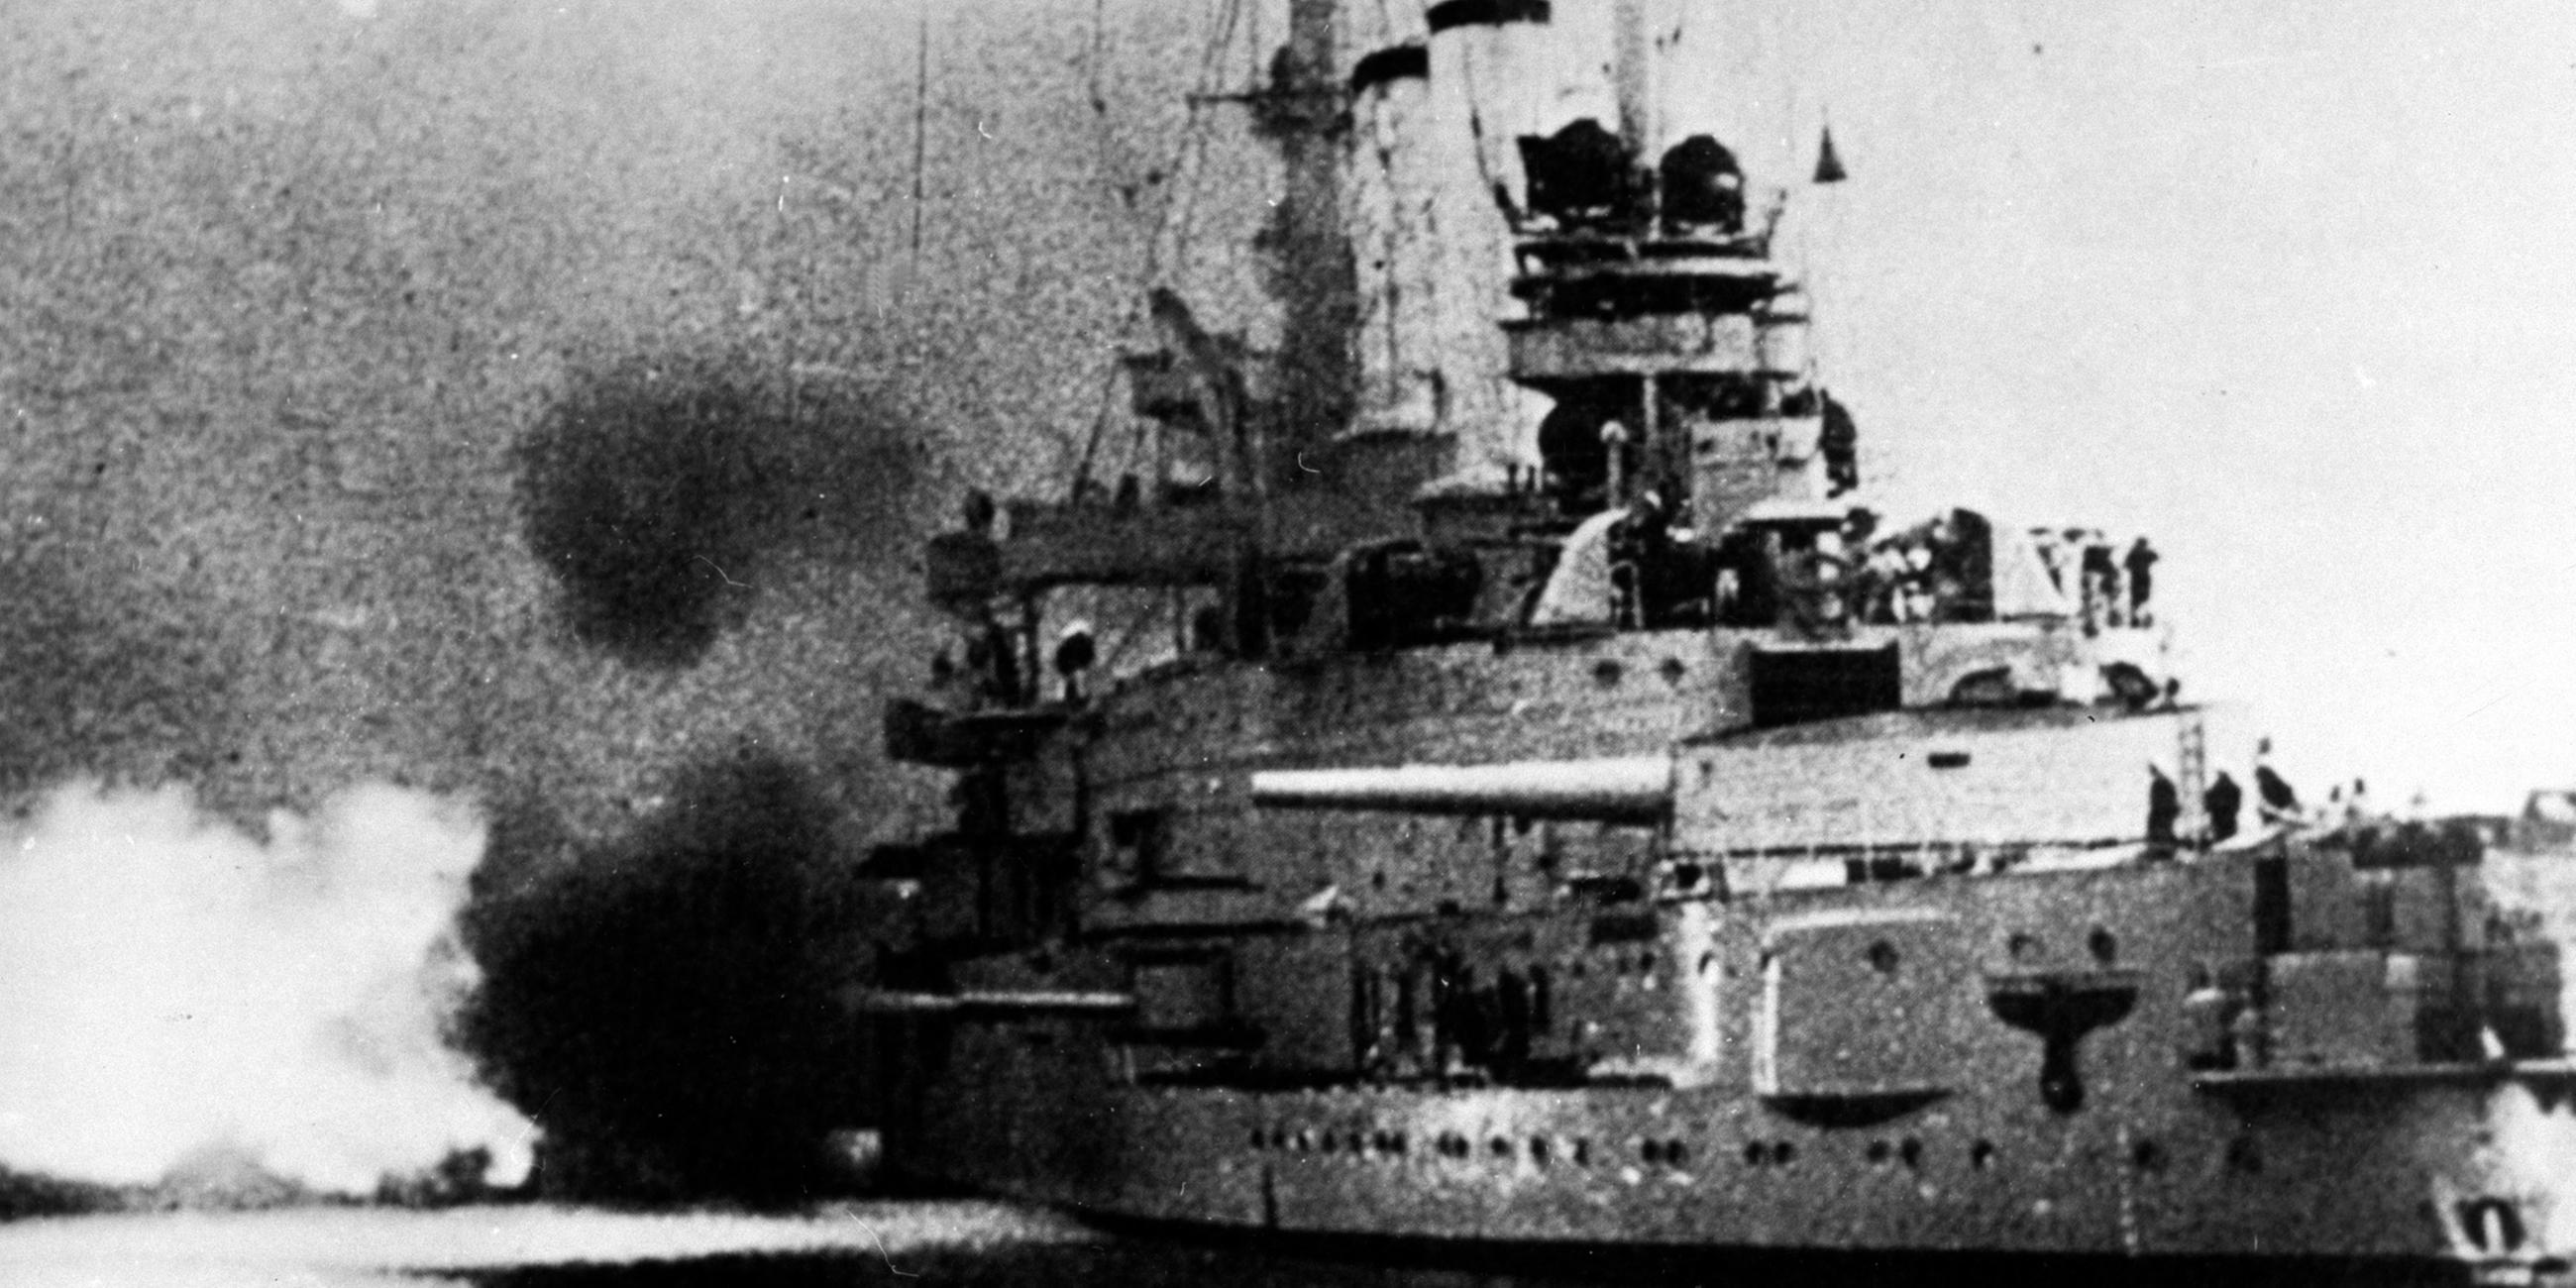 Archiv: Das deutsche Linienschiff "Schleswig- Holstein" beschießt am Morgen des 01.09.1939 die Westerplatte bei Danzig